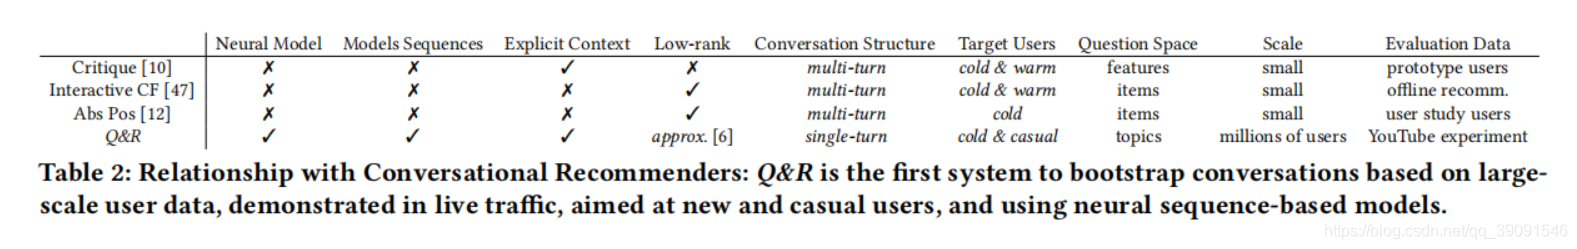 表2:与会话推荐者的关系:Q&R是第一个基于大规模用户数据引导会话的系统，以实时流量显示，针对新用户和普通用户，并使用基于神经序列的模型。